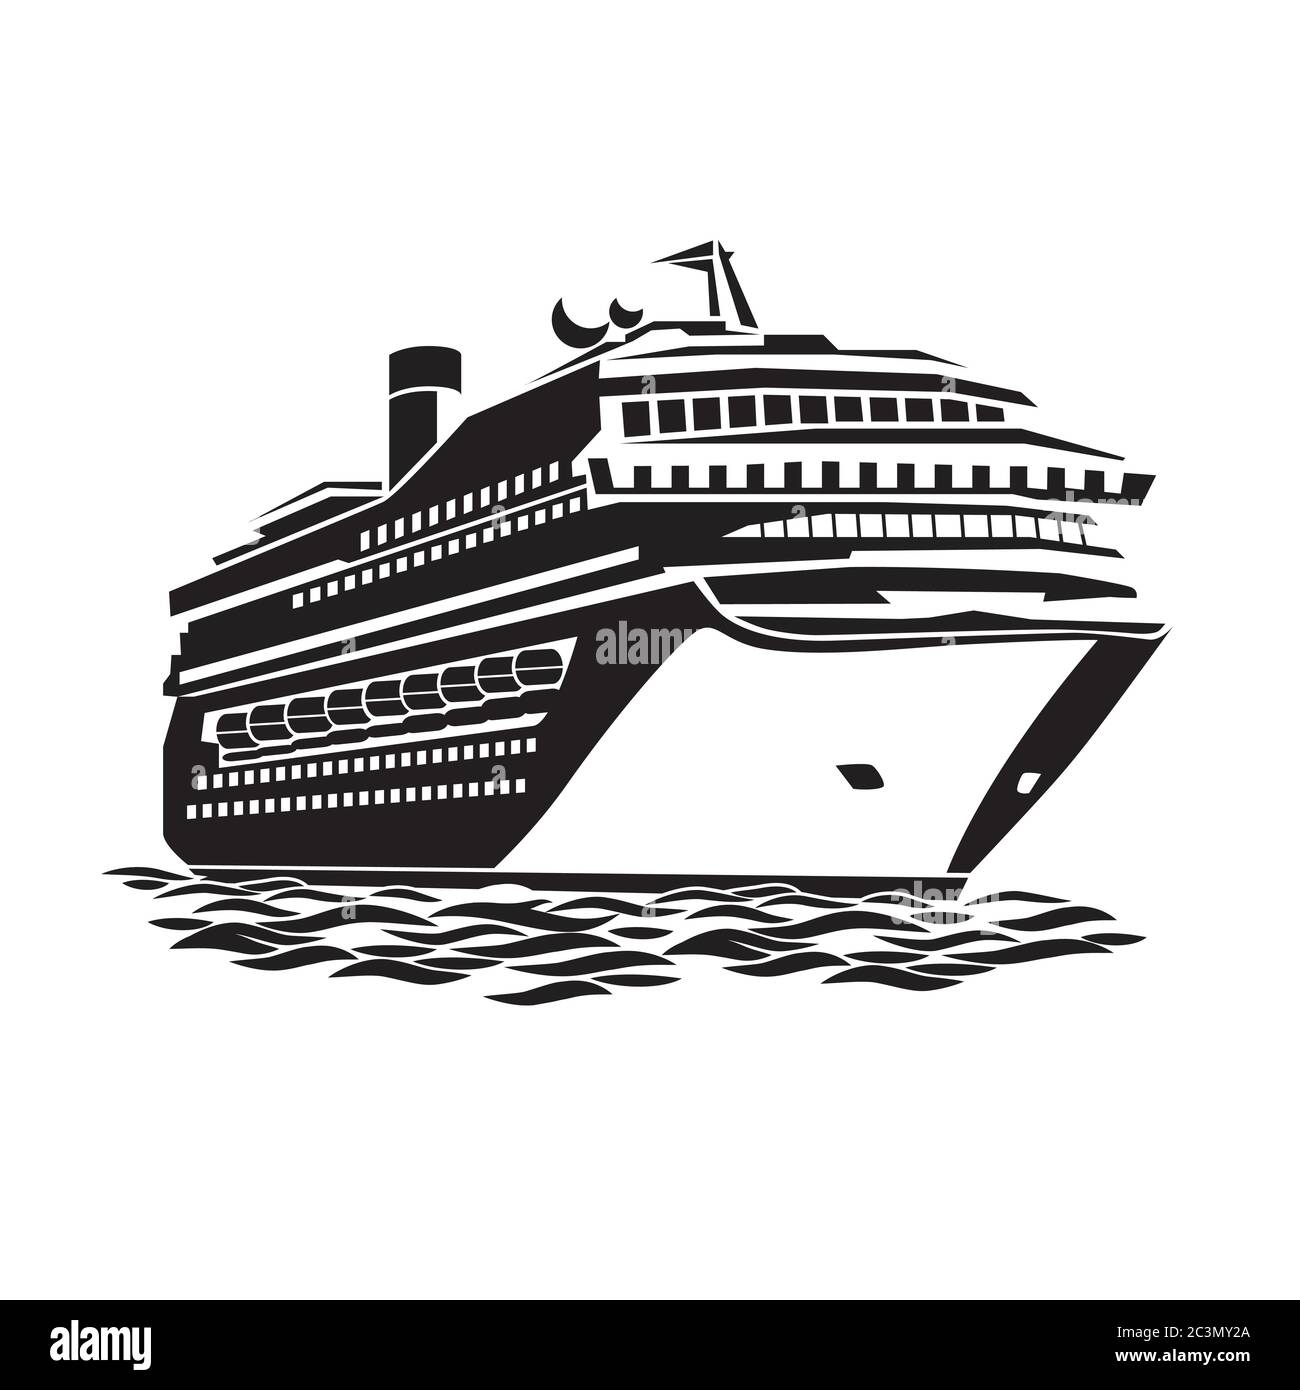 illustrazione stilizzata di una grande nave da crociera sulle onde  dell'oceano Immagine e Vettoriale - Alamy